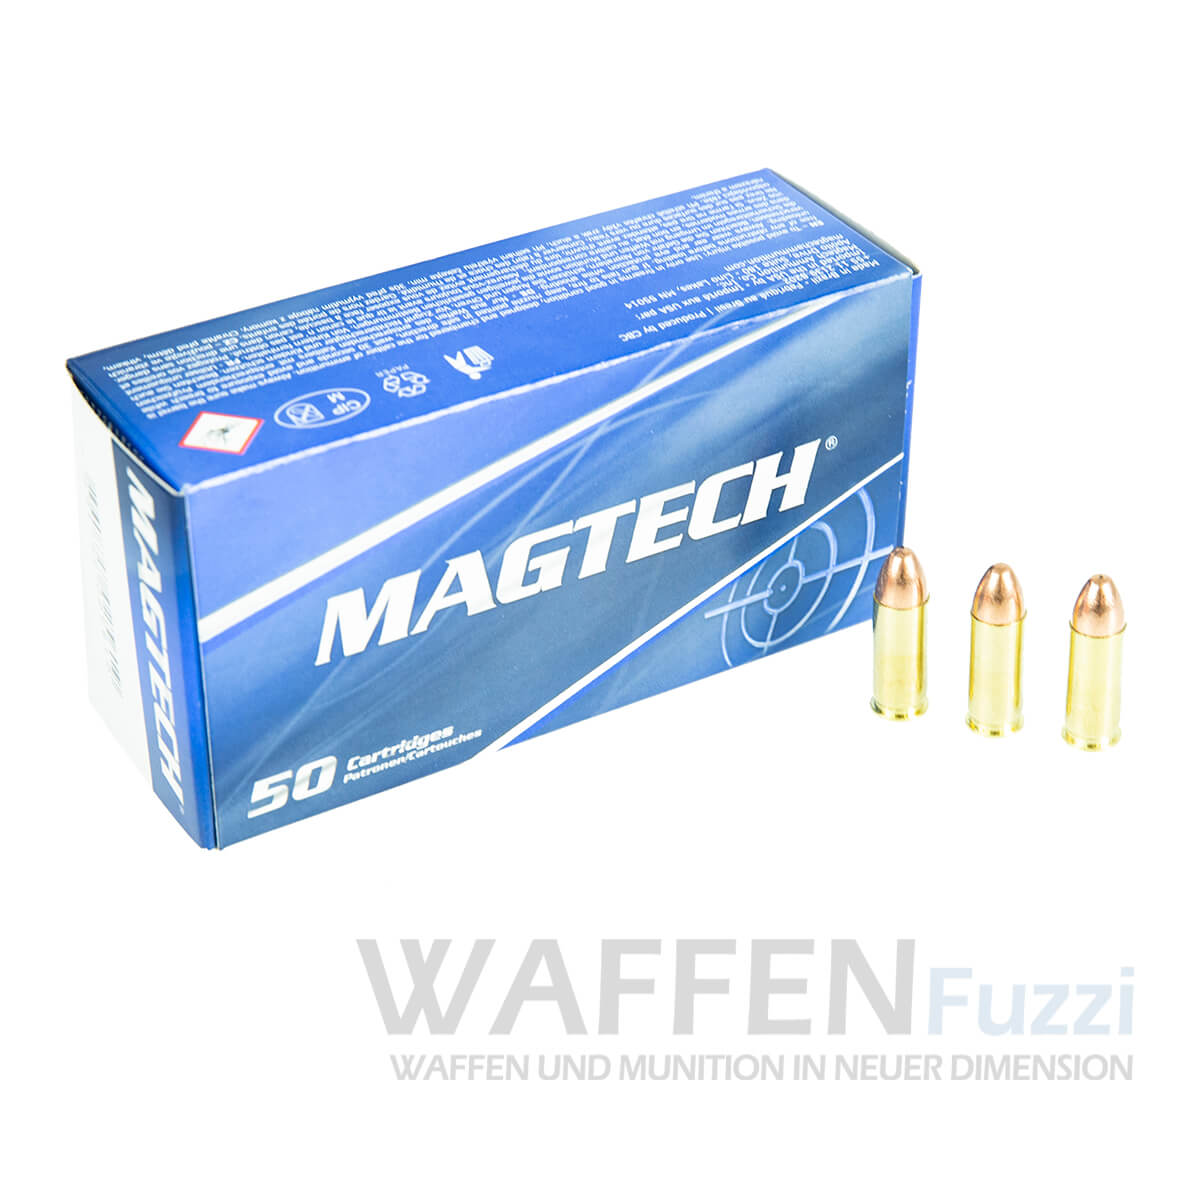 Magtech .38 Super Auto - preisgünstige Munition bei Waffenfuzzi